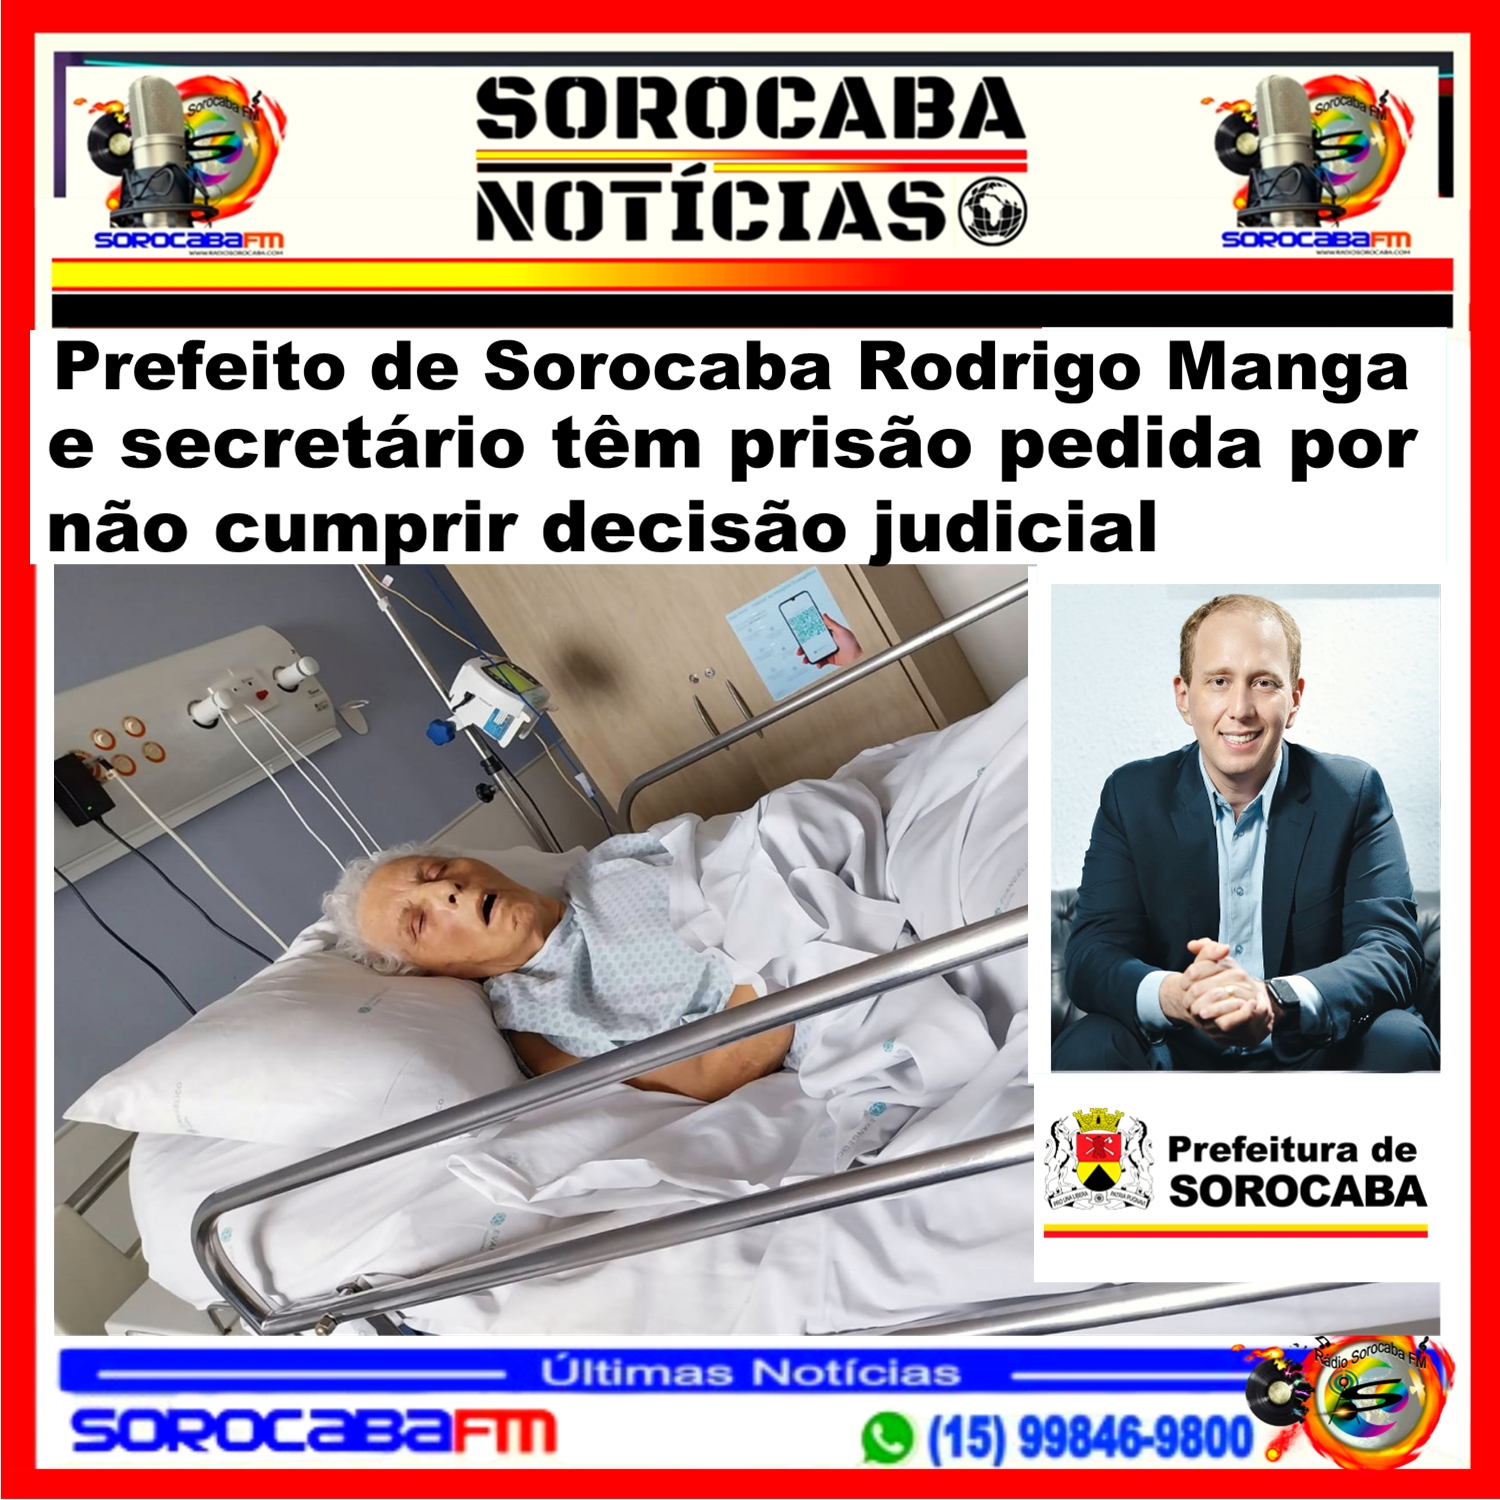 Prefeito de Sorocaba Rodrigo Manga e secretário têm prisão pedida por não cumprir decisão judicial